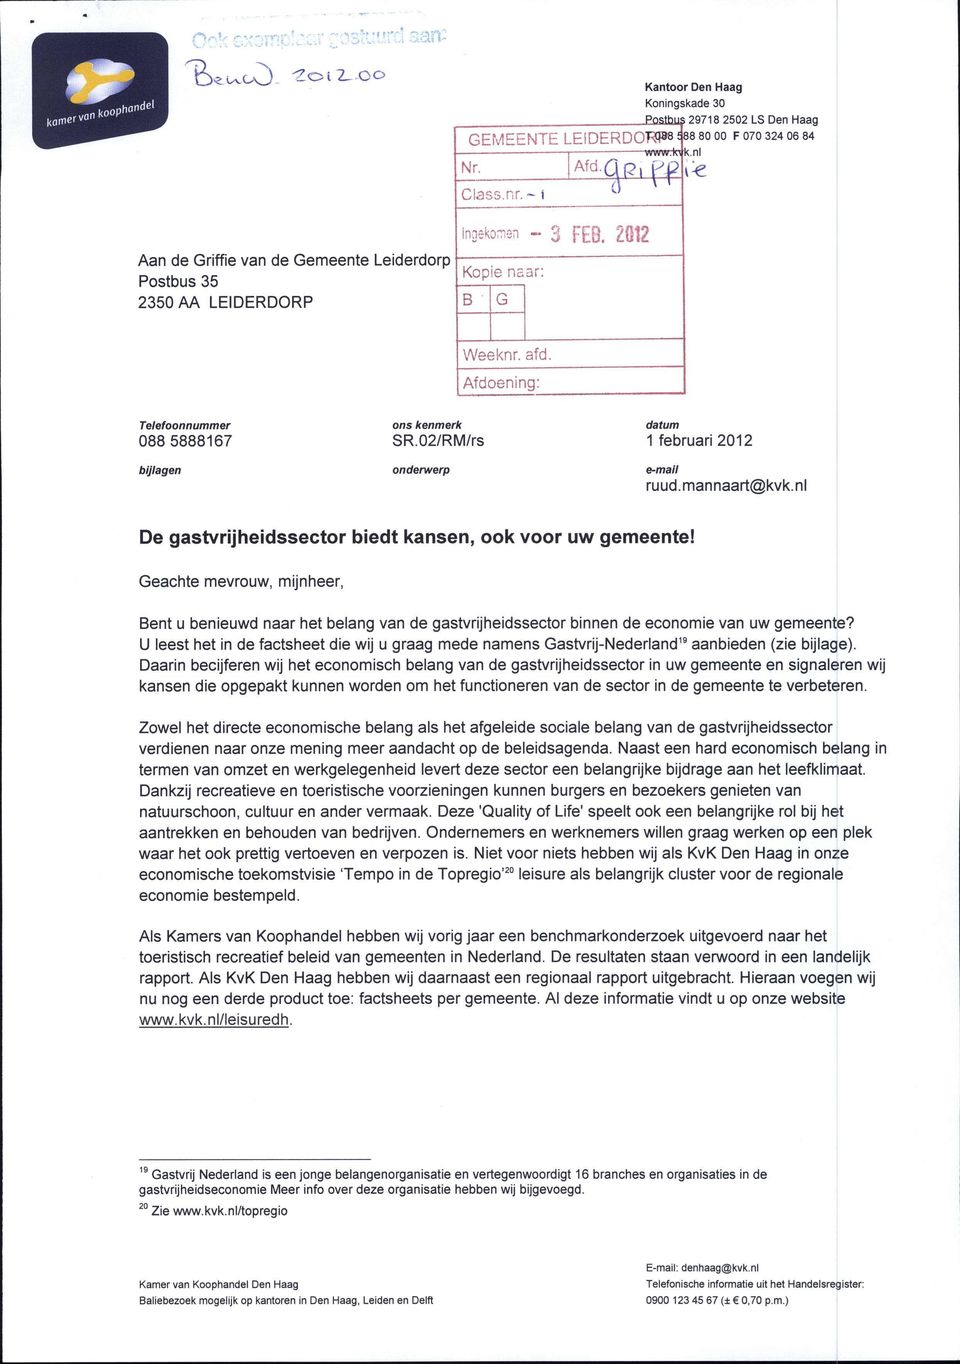 02/RM/rs onderwerp datum 1 februari 2012 e-mail ruud.mannaart@kvk.nl De gastvrijheidssector biedt kansen, ook voor uw gemeente!